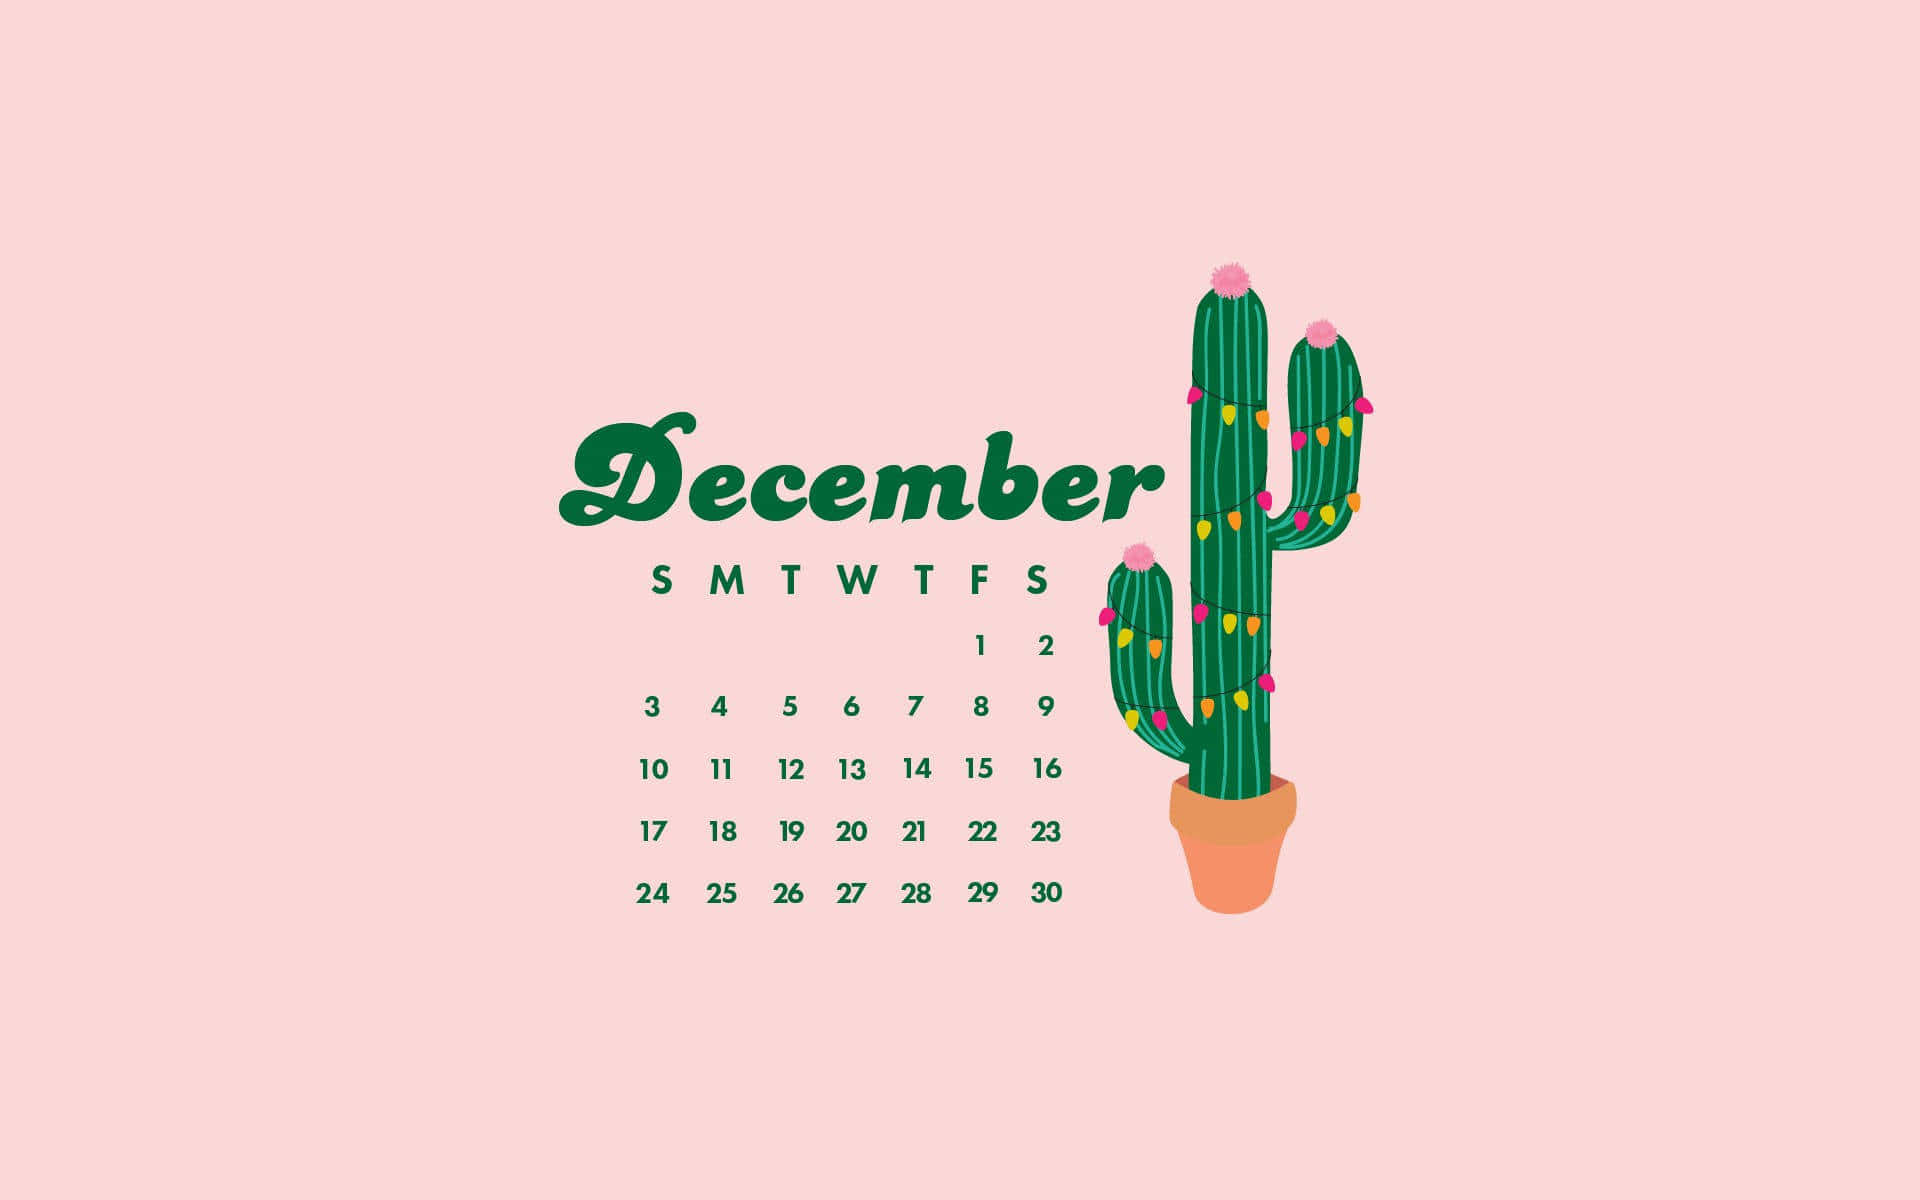 Einkaktus-kalender Mit Dem Wort Dezember Wallpaper